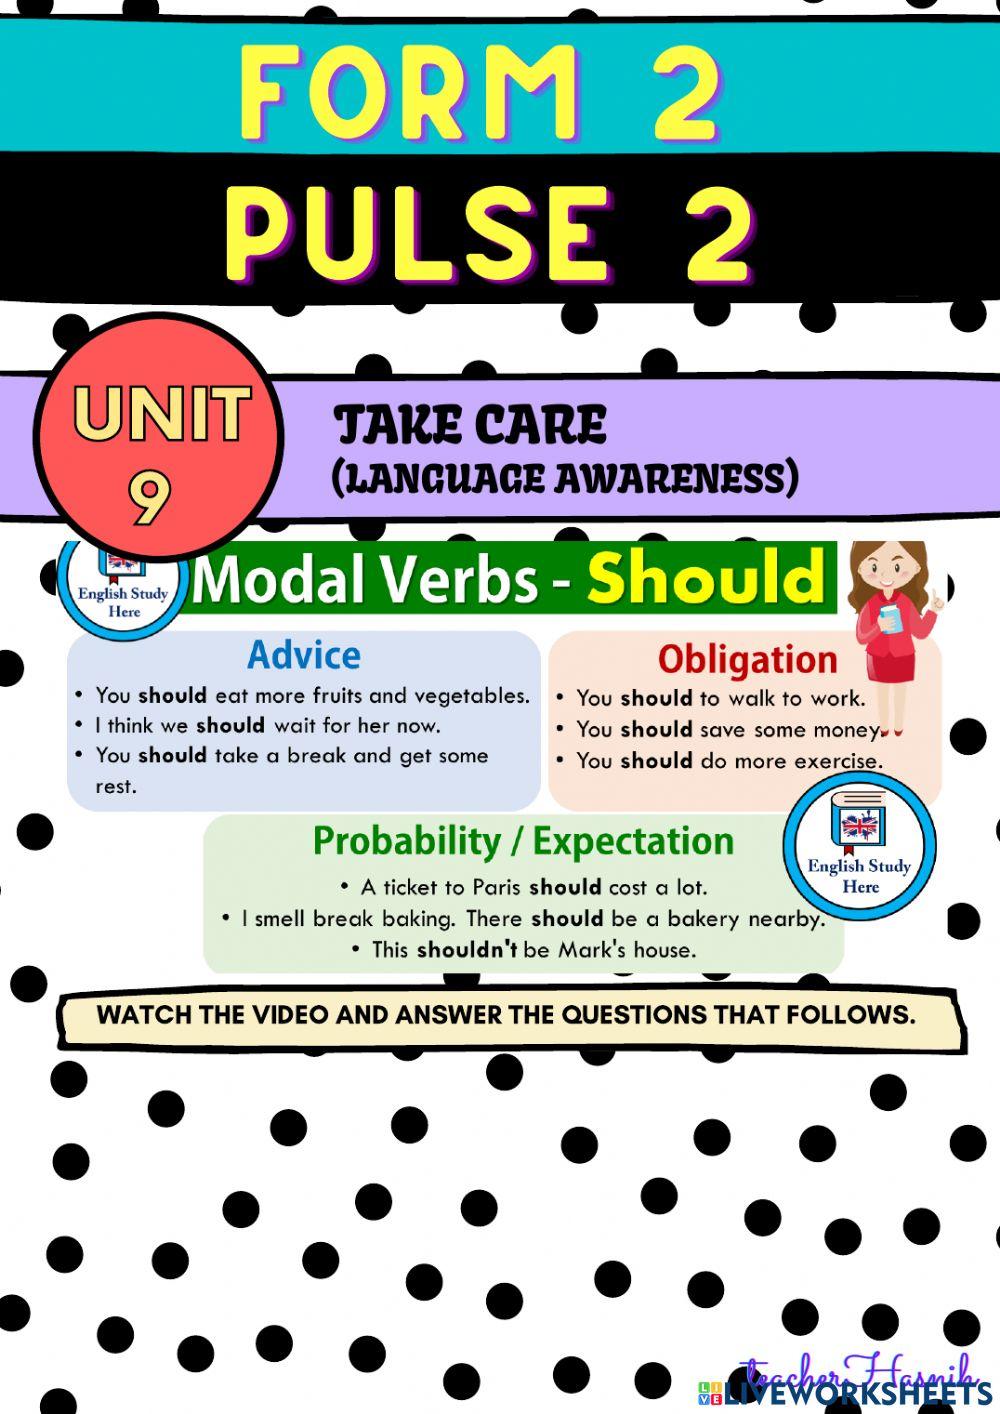 Pulse 2: Unit 9 Take Care (Grammar)